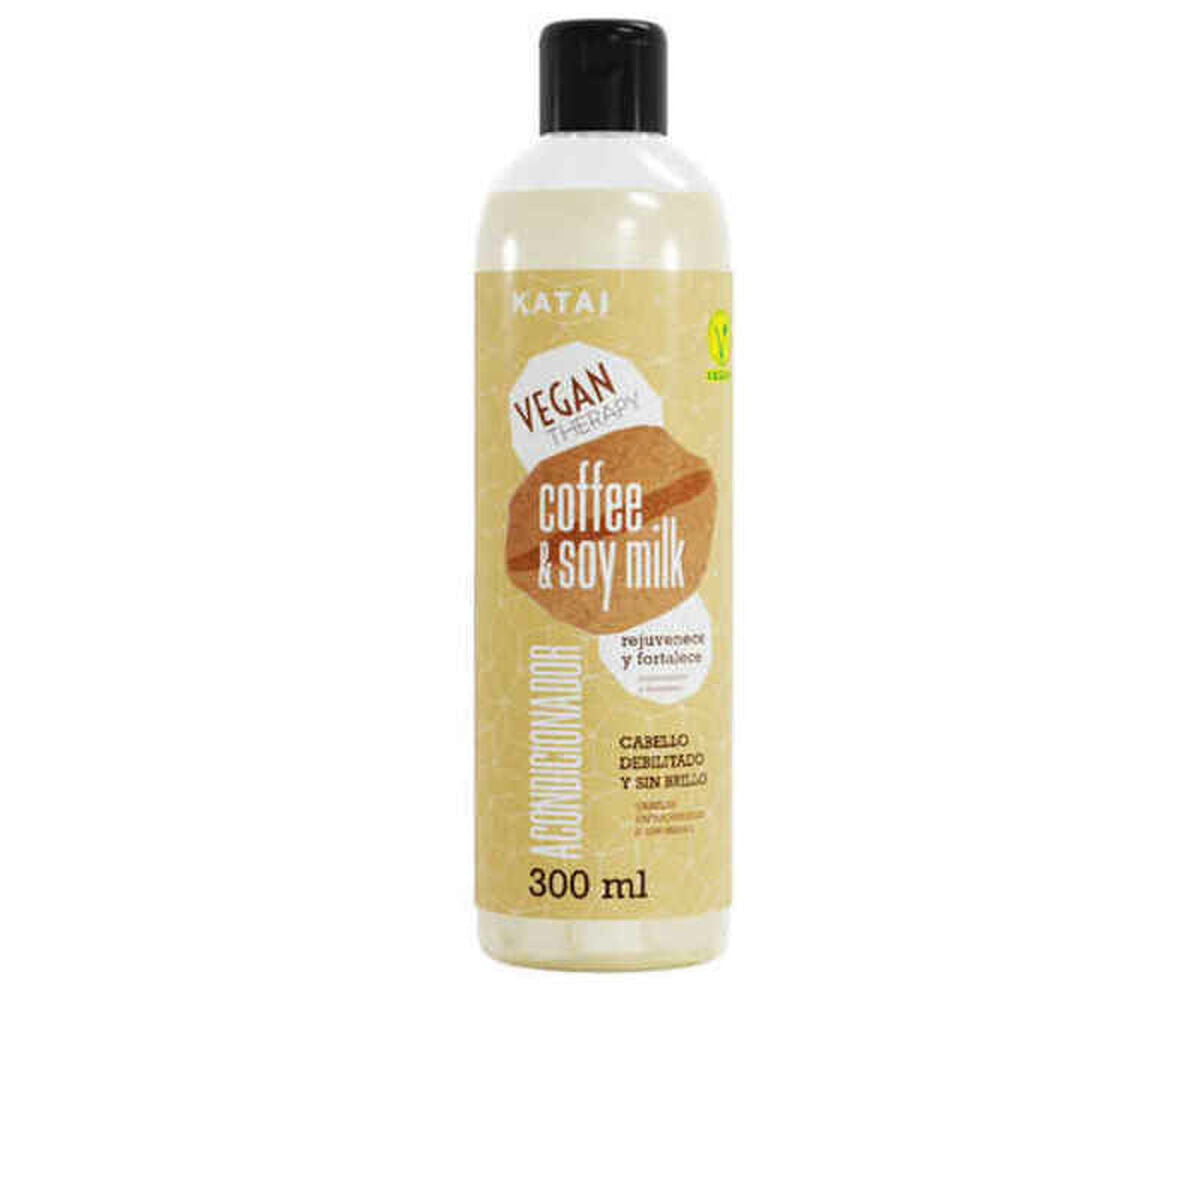 Après-shampooing Café & Lait de Soja Latte Katai KTV011821 300 ml